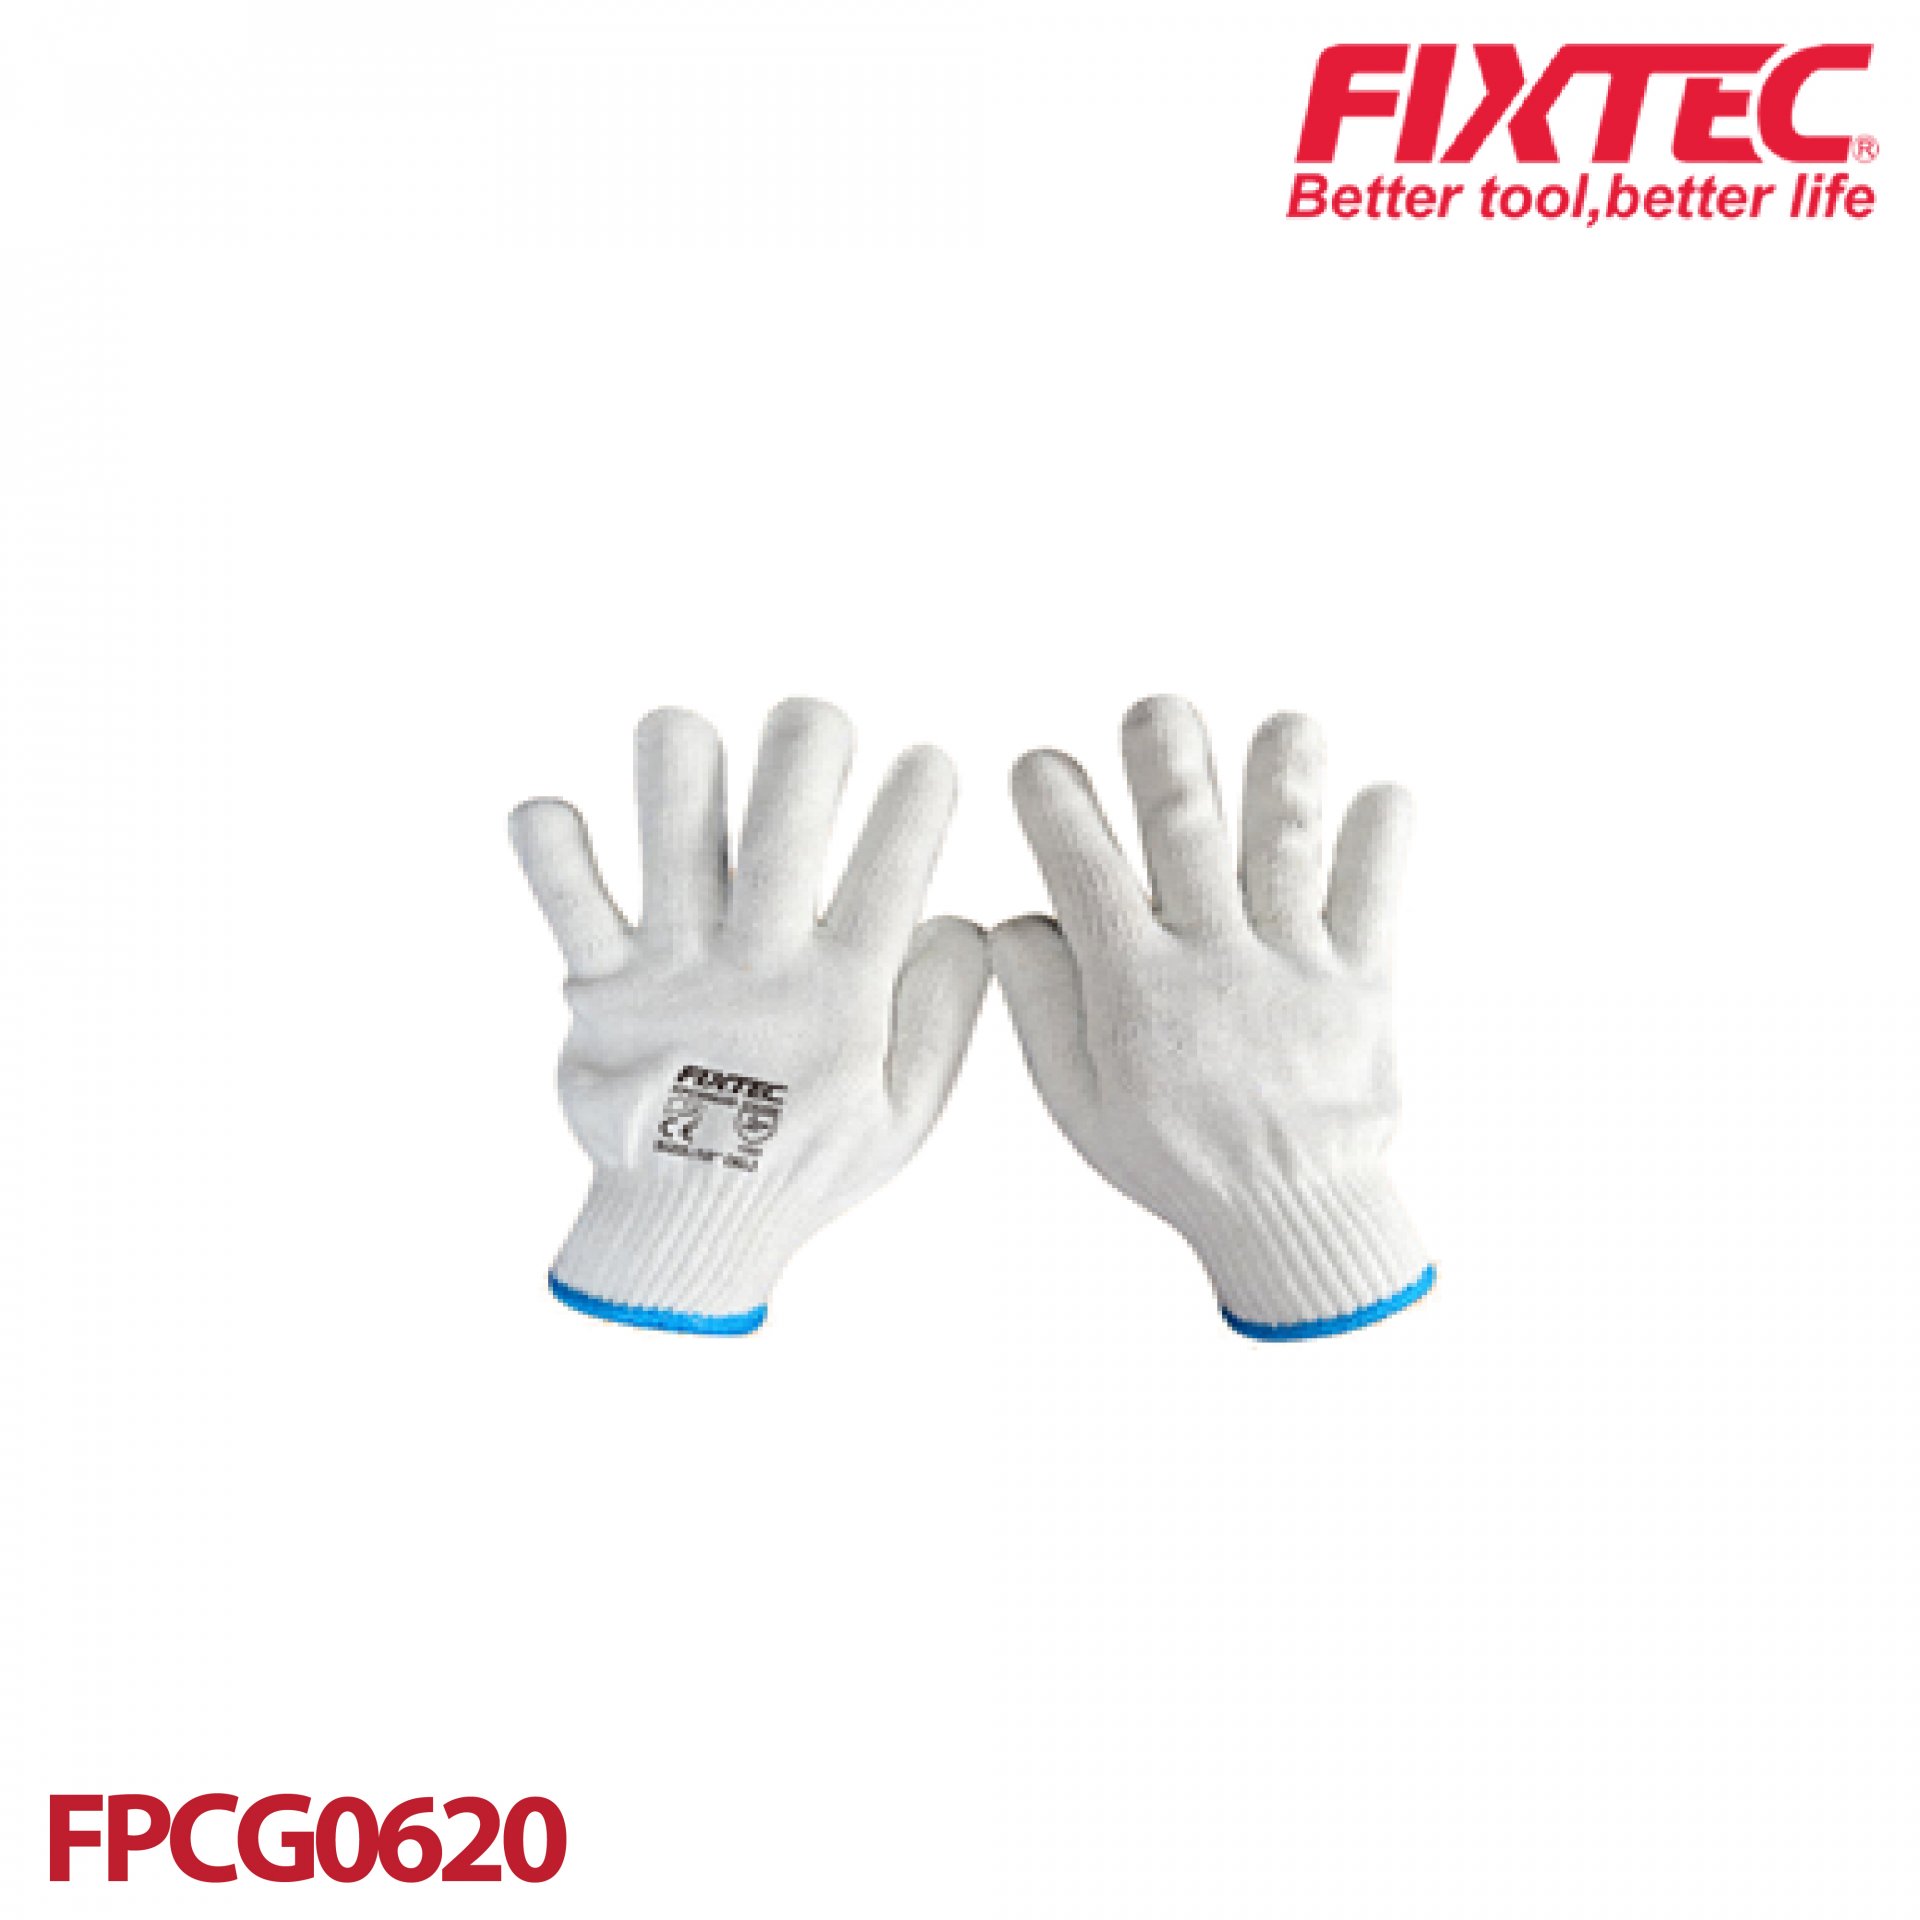 ถุงมือผ้าคอตตอน FIXTEC FPCG0620